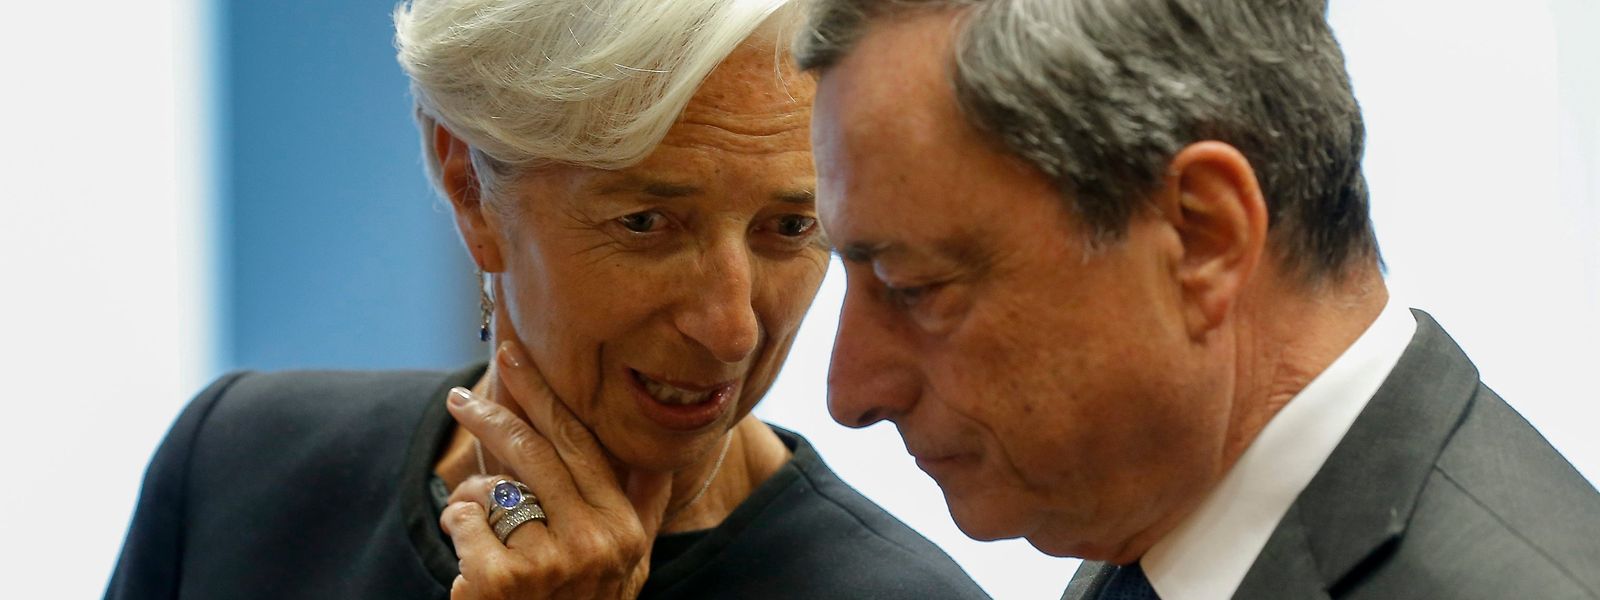 Christine Lagarde, die Direktorin des Internationalen Währungsfonds, und Mario Draghi, Präsident der Europäischen Zentralbank (EZB), unterhalten sich zu Beginn des Treffens der Finanzminister der Eurogruppe.